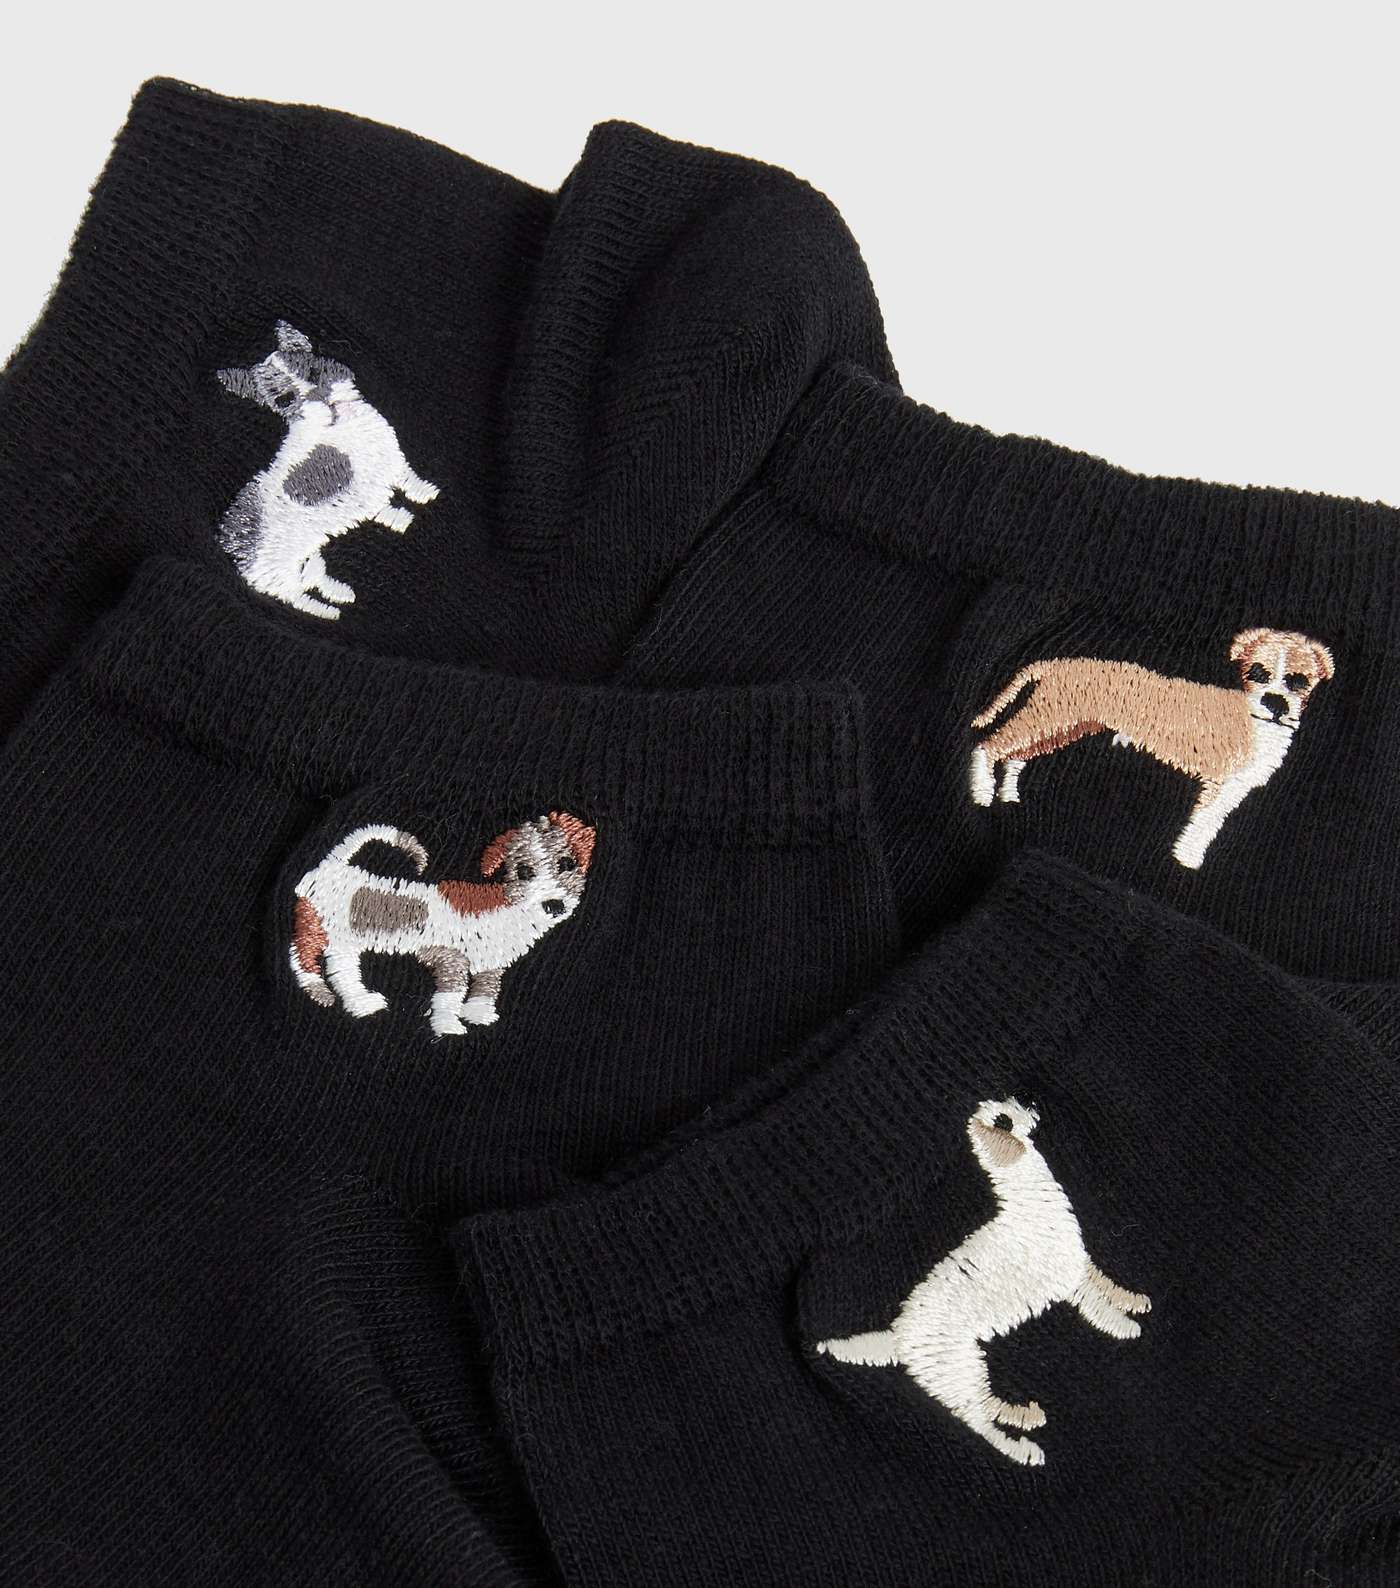 4 Pack Black Dog Embroidered Trainer Socks Image 2